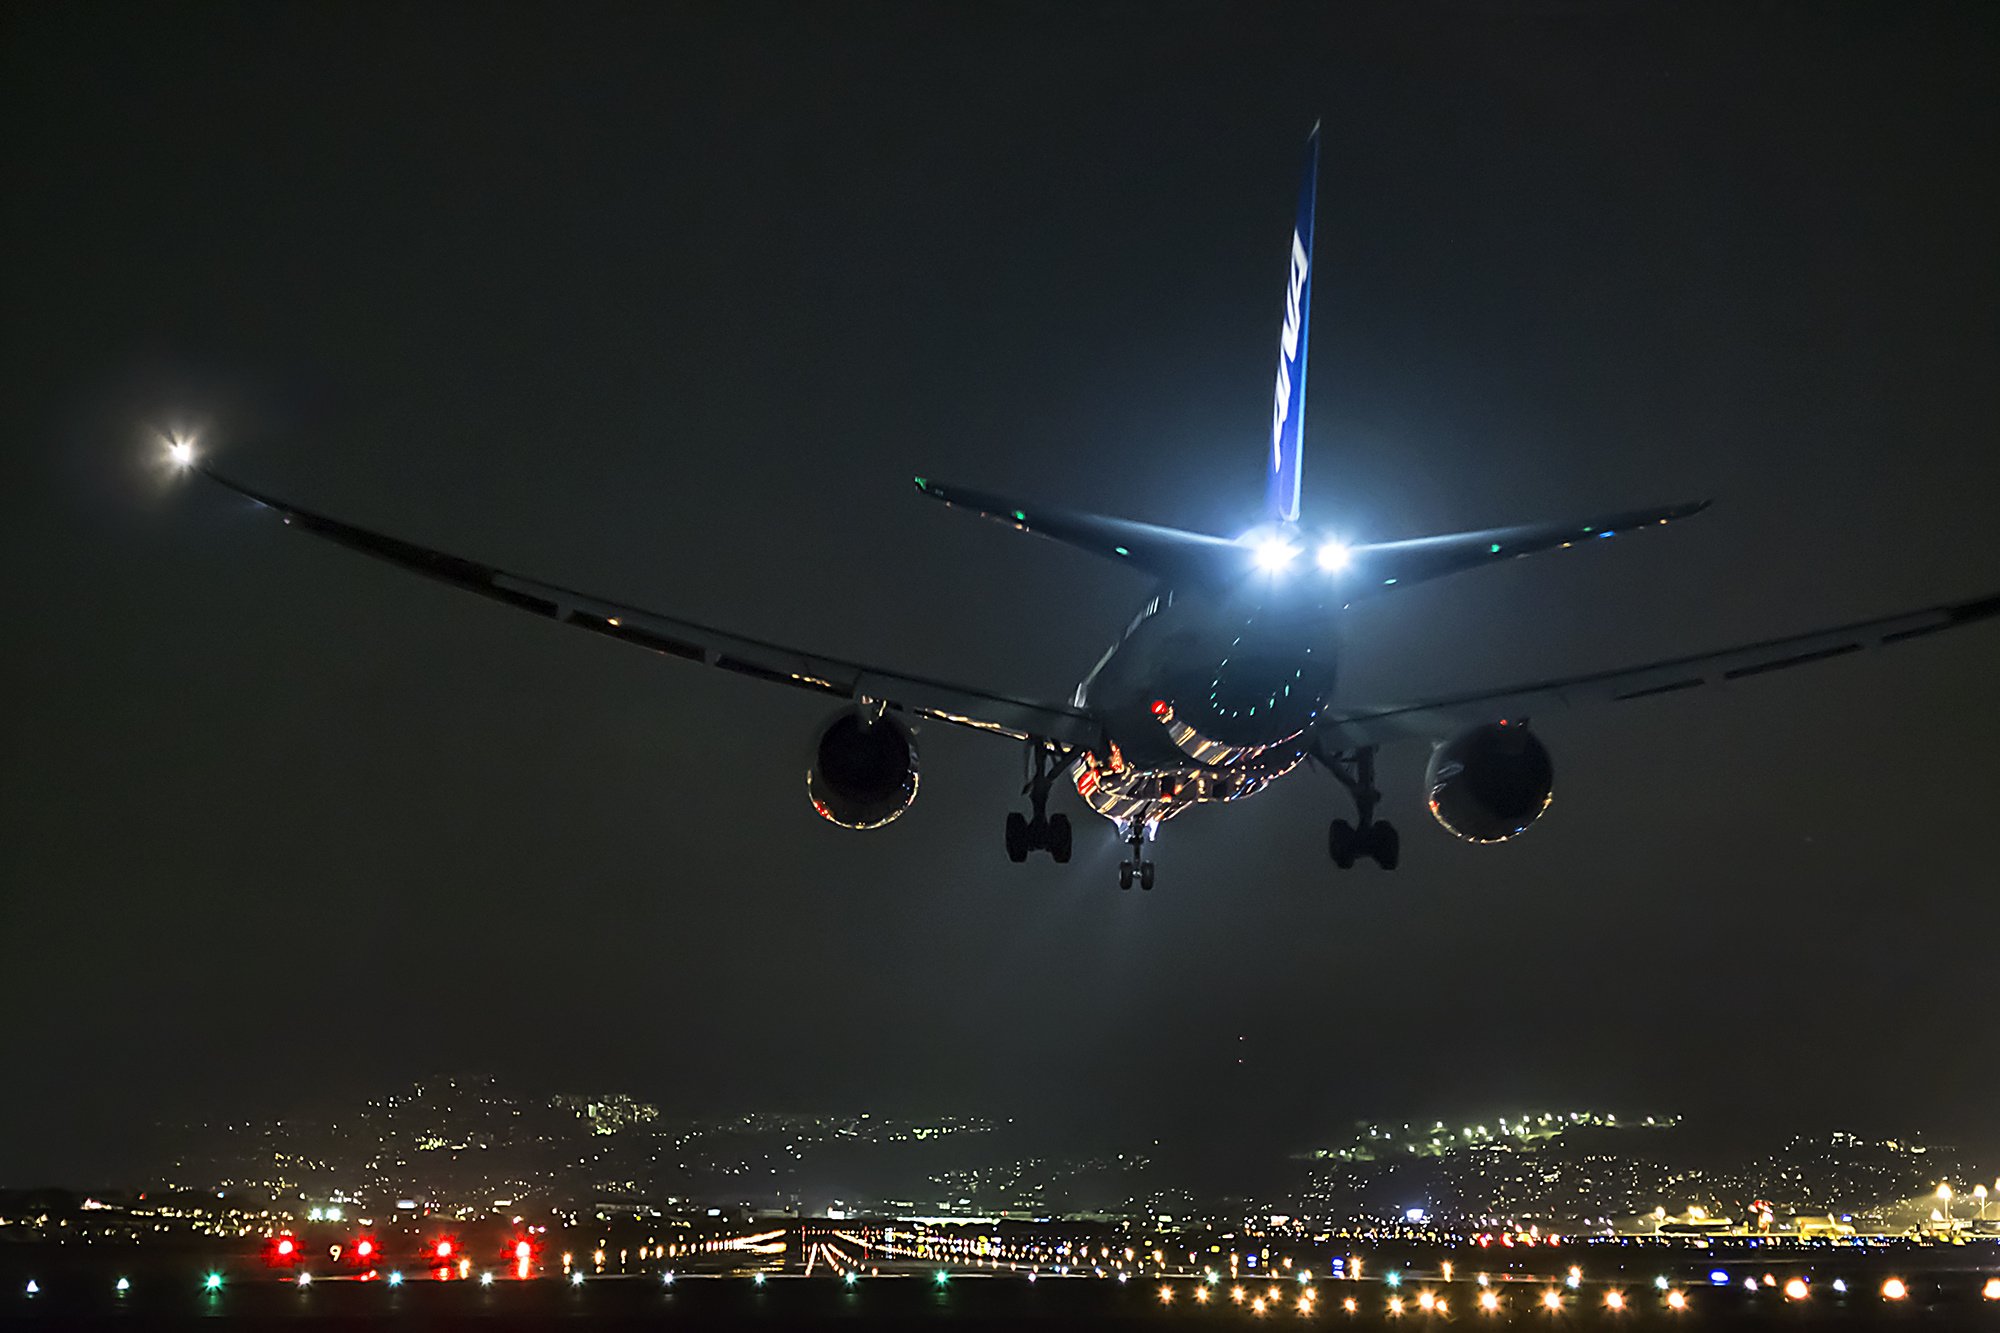 Фото Самолет над ночным городом, ву Azul Obscura